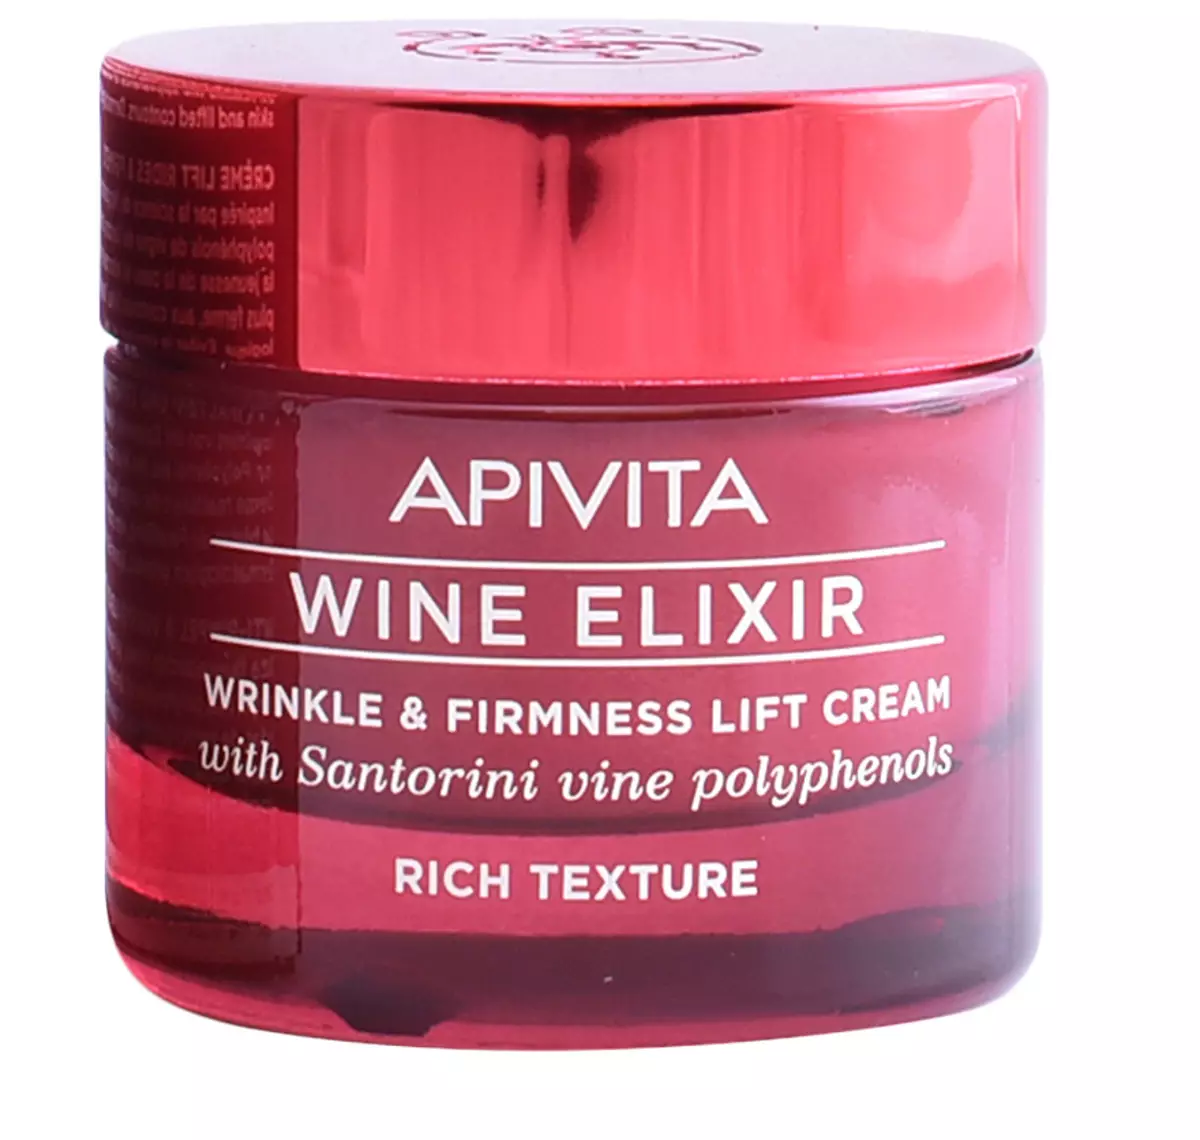 Kosmetyki Apivita: Funkcje i rodzaje greckich kosmetyków 